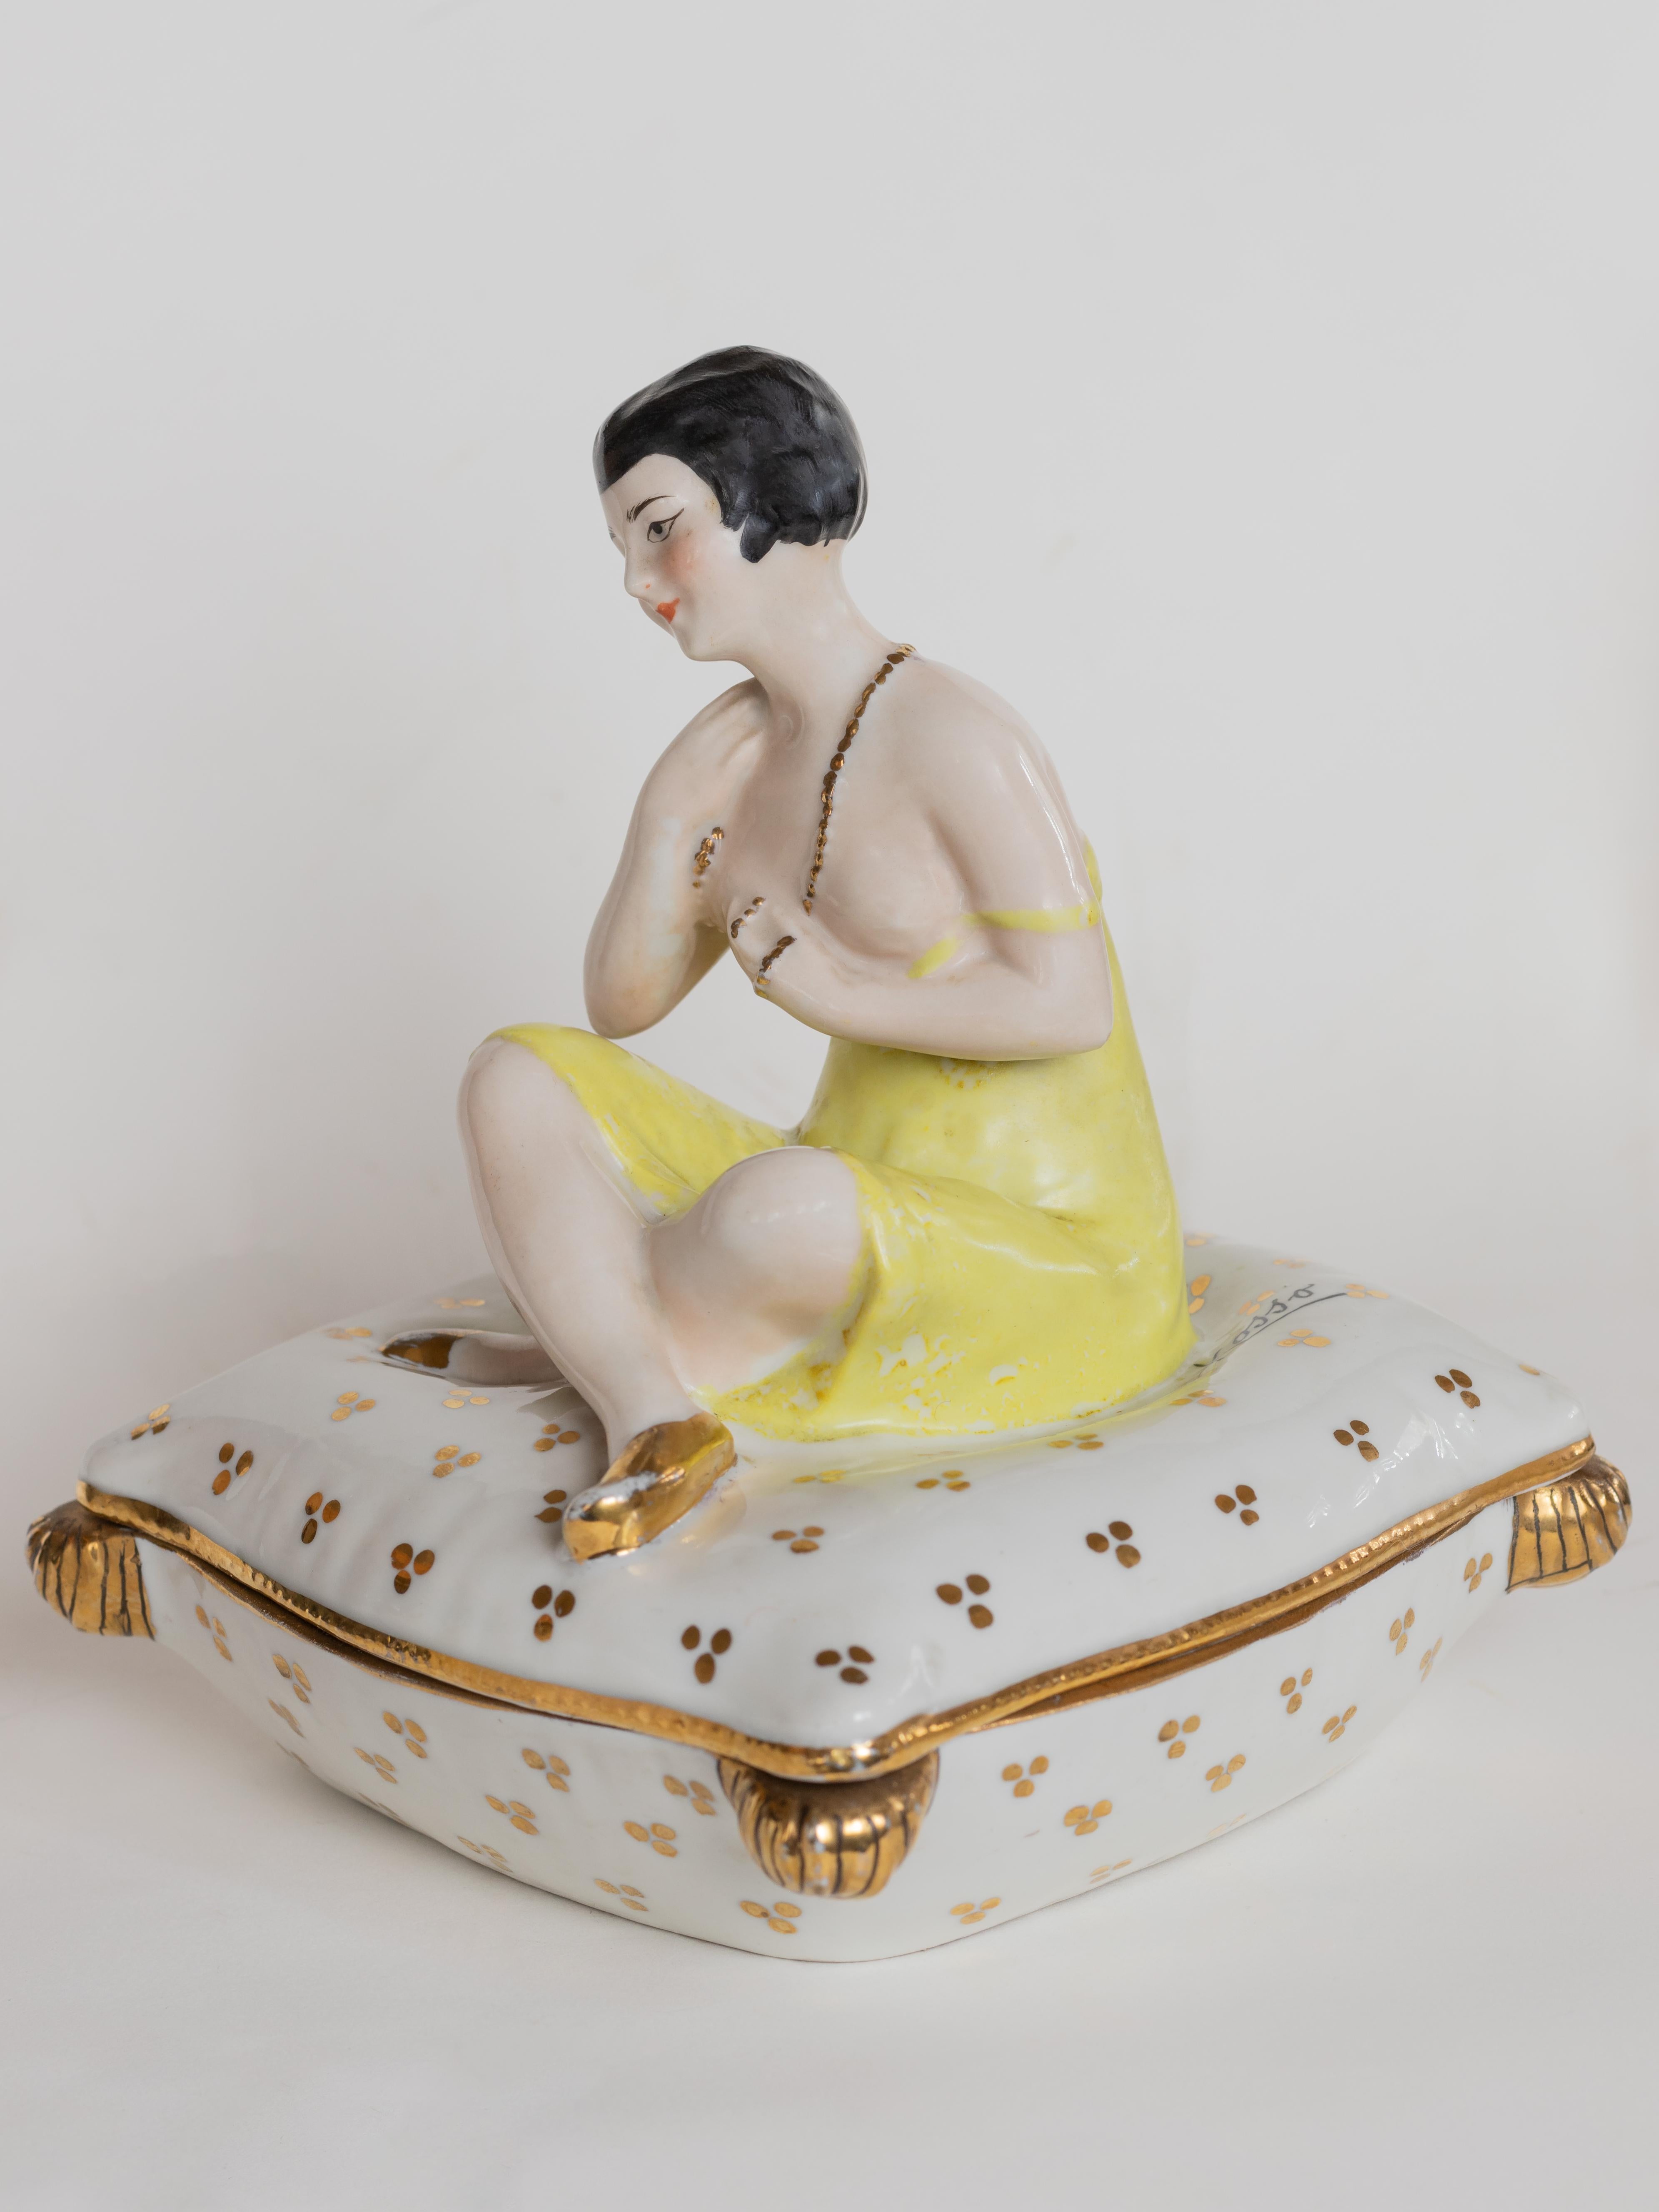 Eine wunderschön gearbeitete Art Deco Puderdose oder Schmuckkästchen, geschmückt mit einer zarten Figur einer Frau in einem gelben Kleid, die auf einem Plüschsofa ruht. Das Stück trägt das Zeichen 